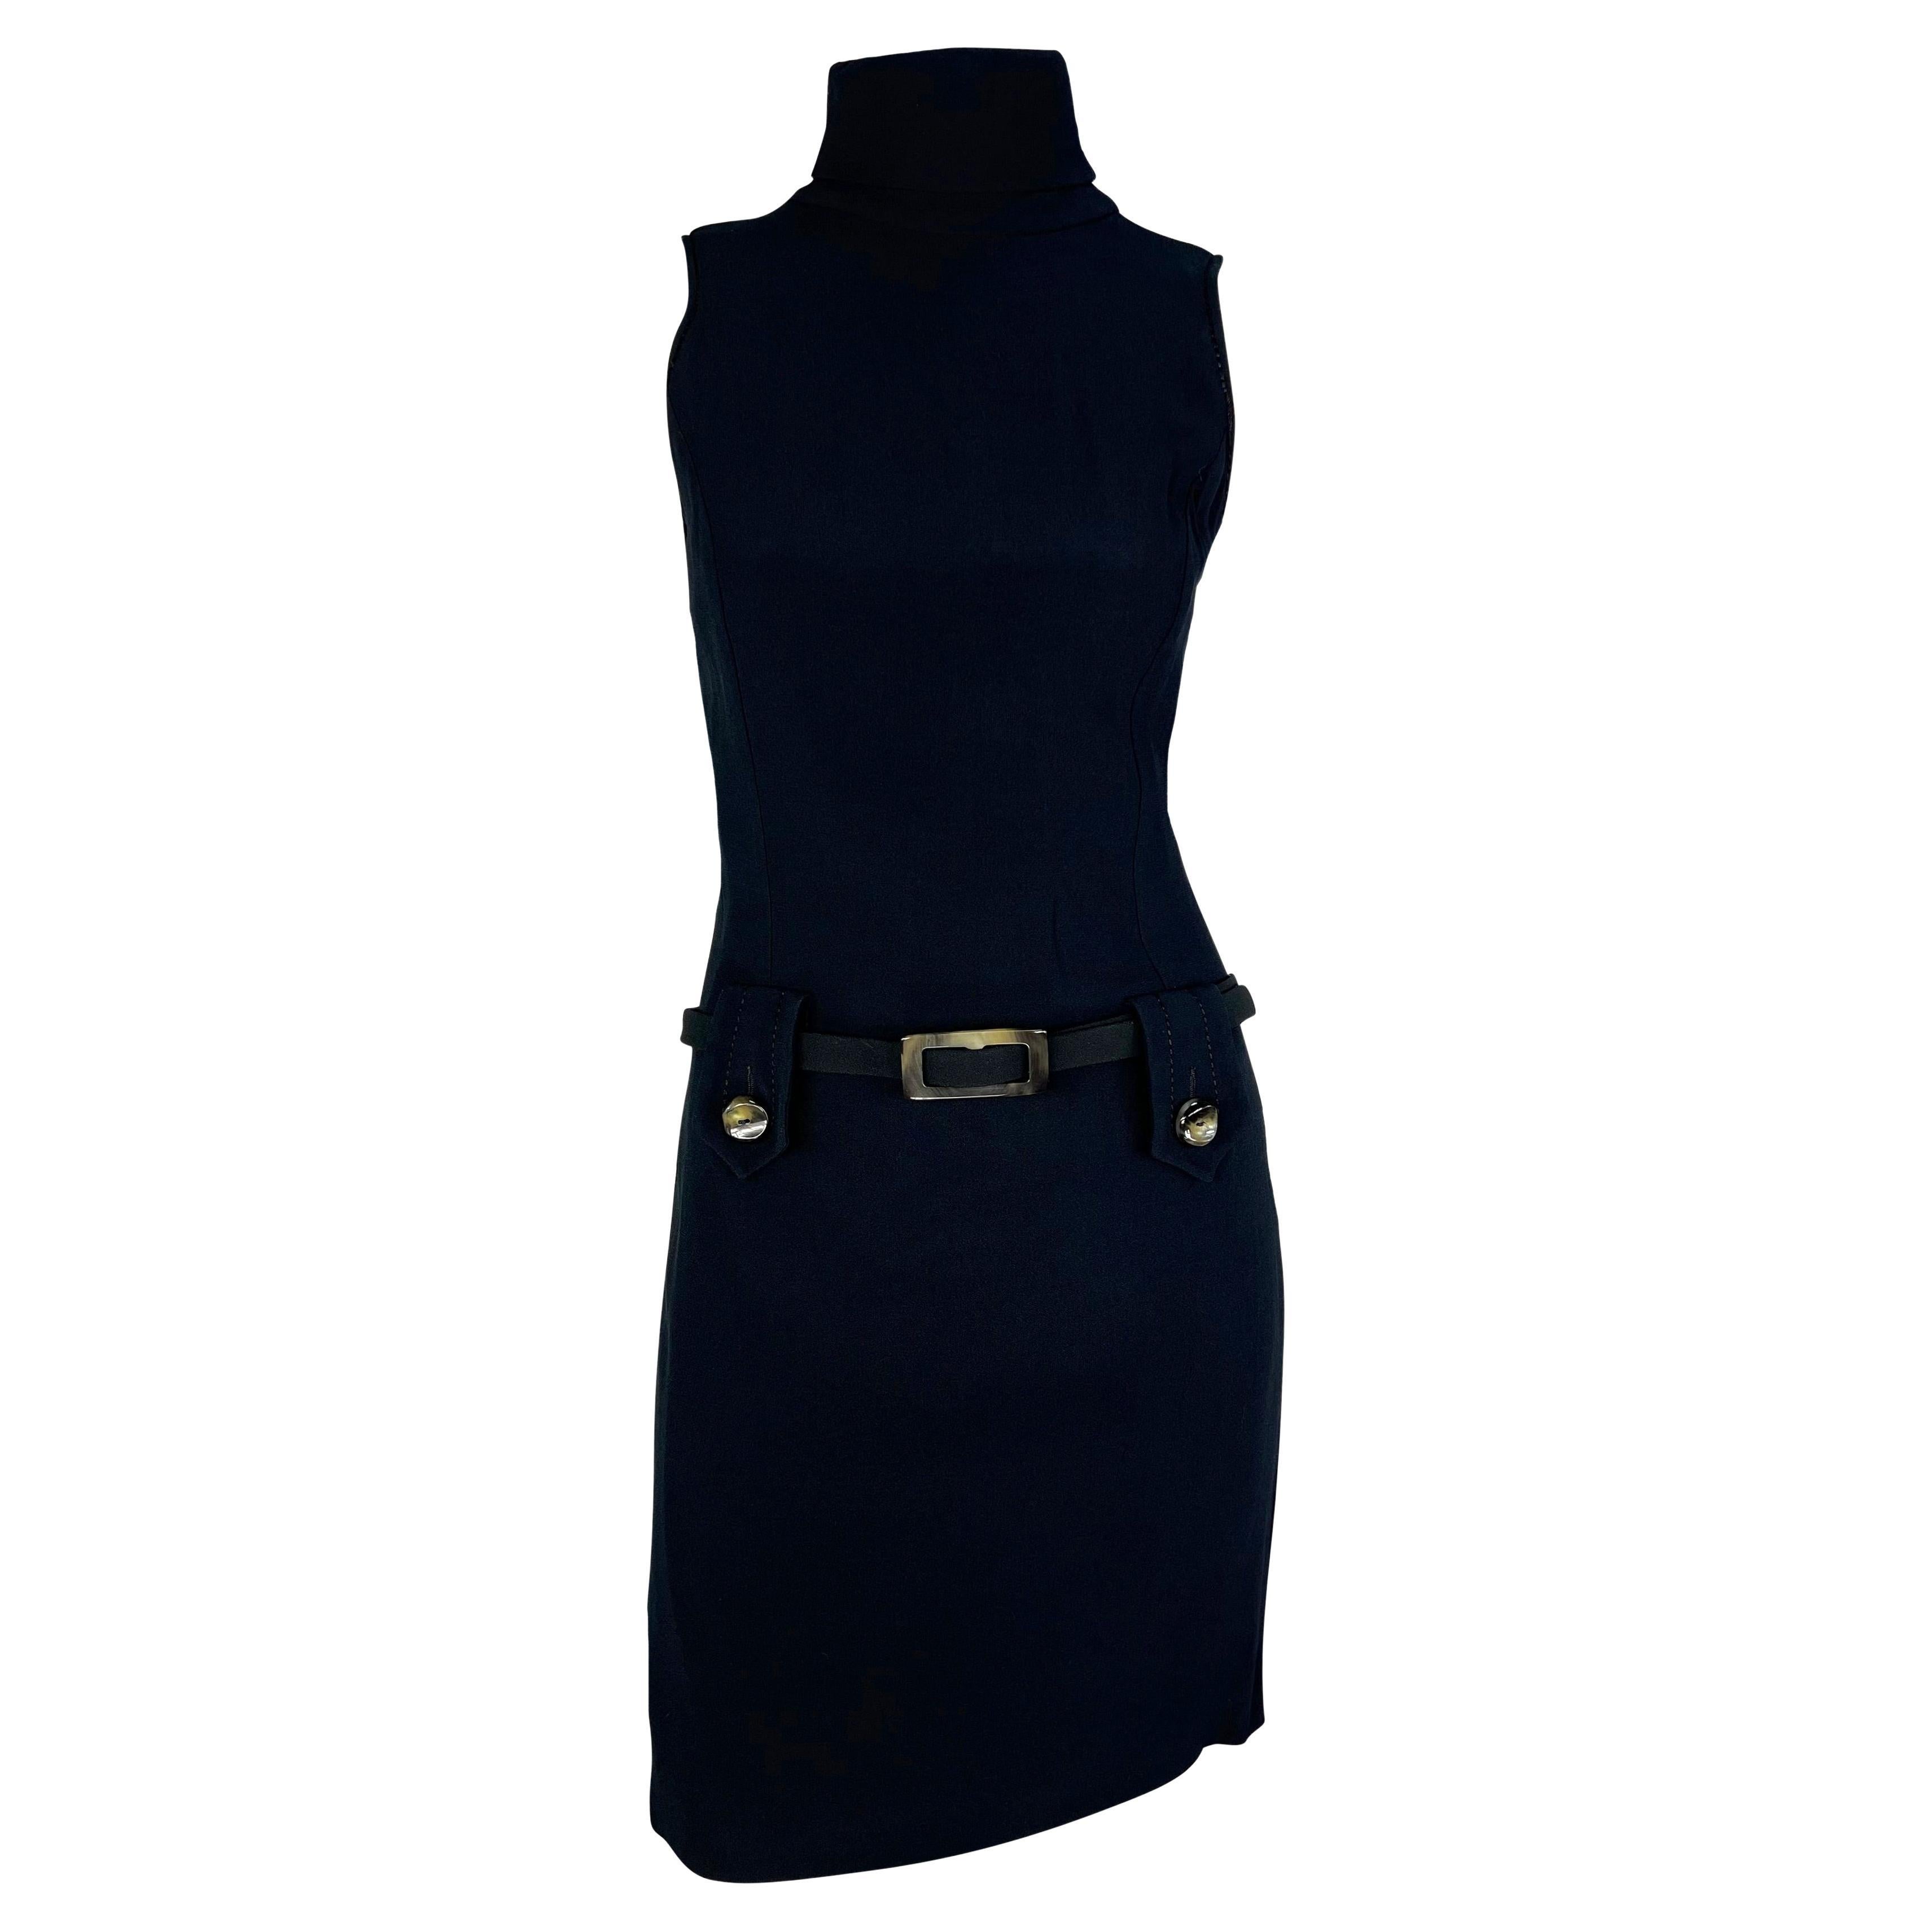 1990s Paco Rabanne Bond Girl Mock Neck Belted Sleeveless Navy Black Dress For Sale